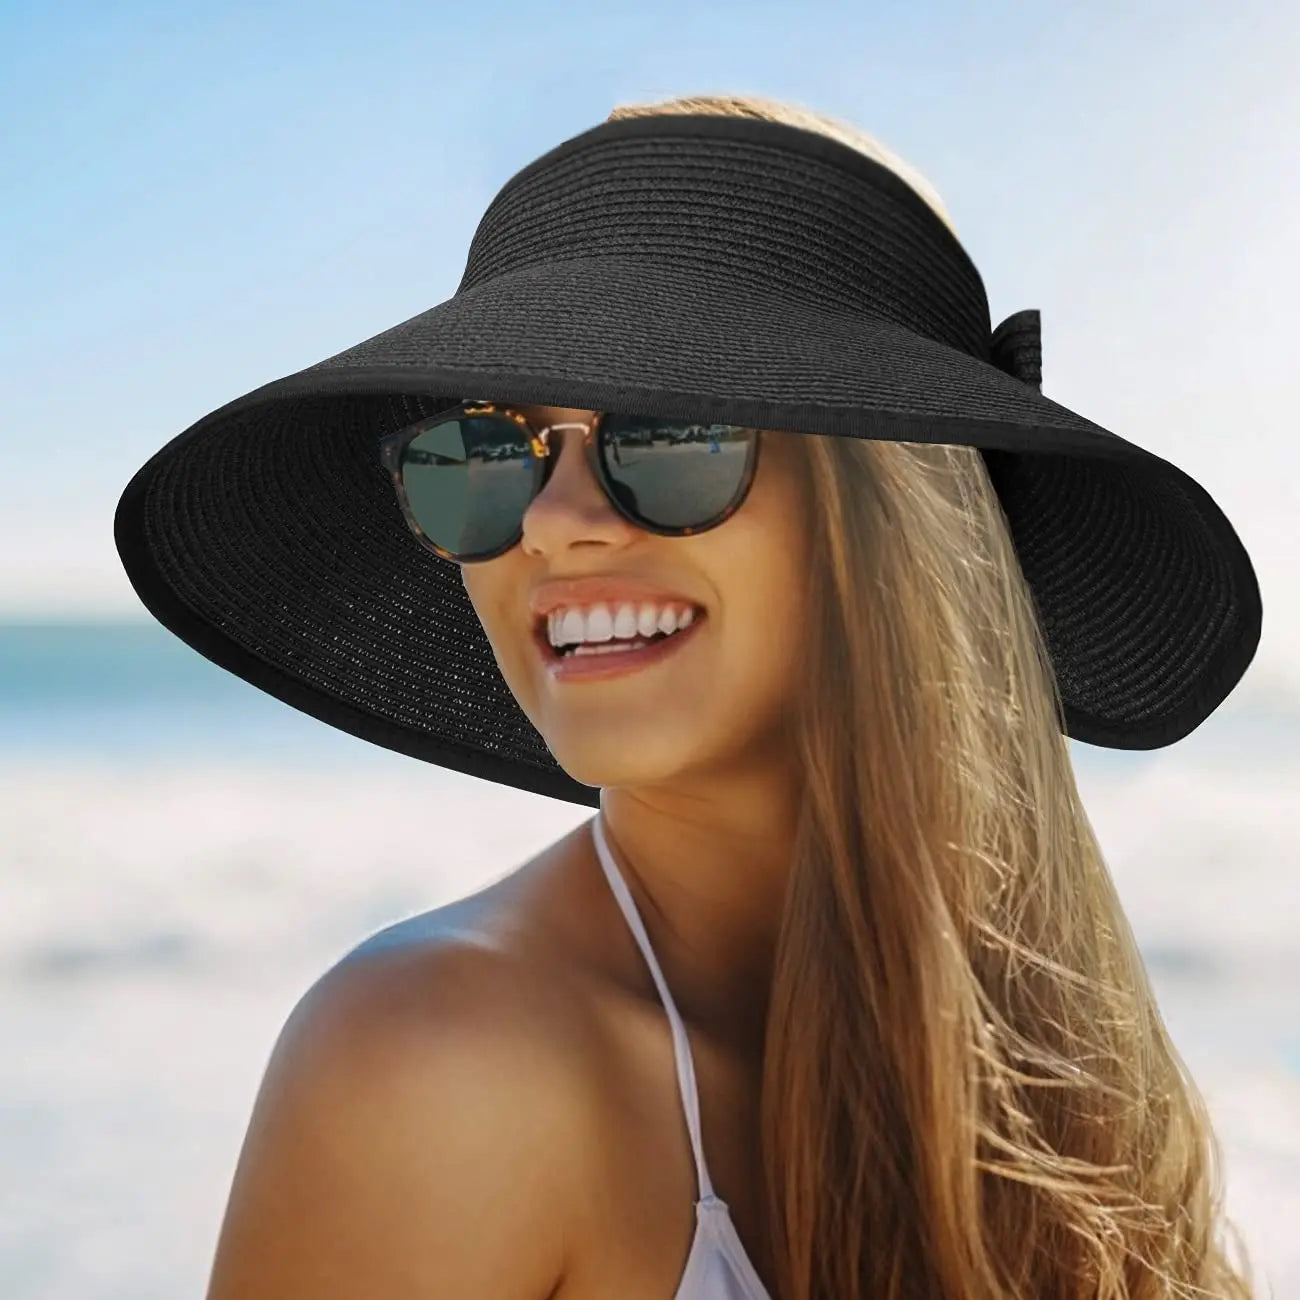 قبعة صيفية للنساء - أنيقة ومقاومة للأشعة فوق البنفسجية للتنزه في الهواء الطلق، قبعة شمسية قابلة للطي واسعة وكبيرة الحواف، قبعات من القش للشاطئ